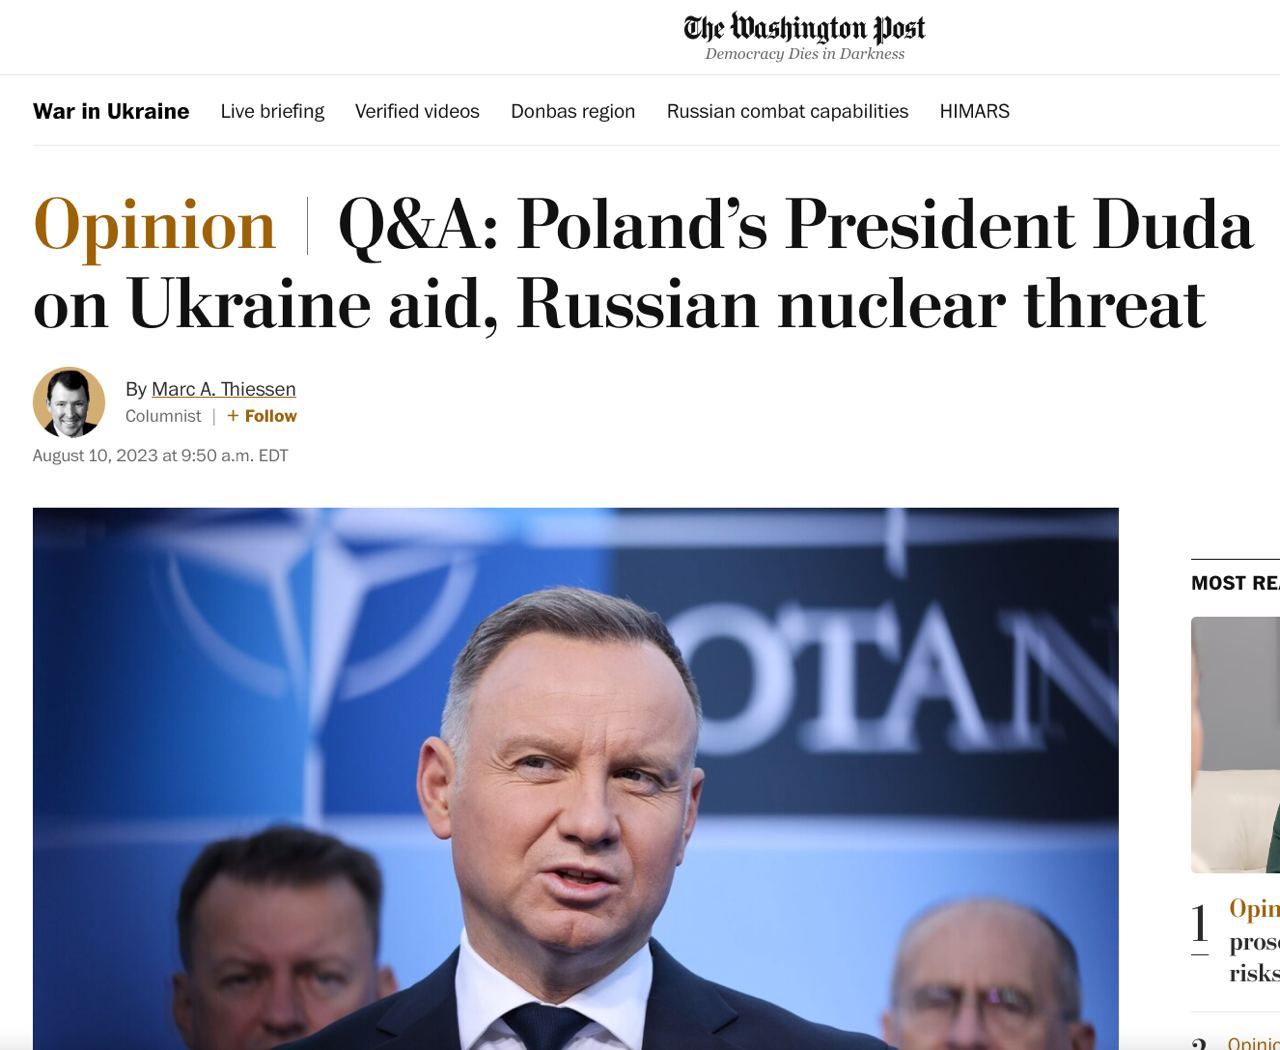 У Украины недостаточно оружия, чтобы изменить баланс в войне – Дуда в интервью газете The Washington Post